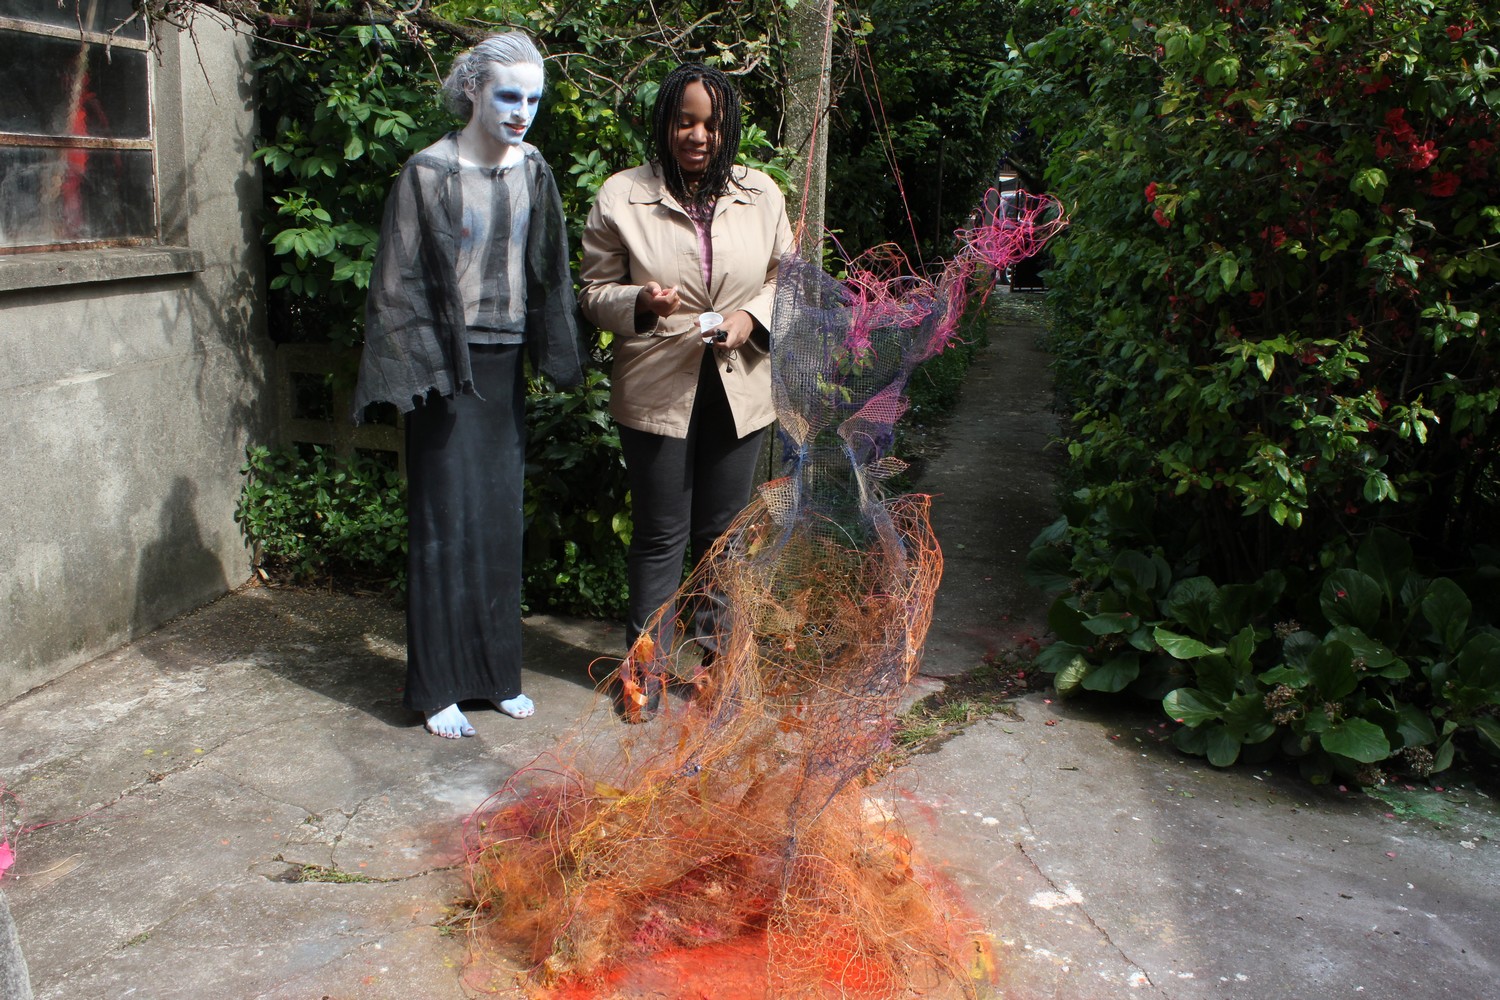 Maquillage et costume de l'artiste Arnaud Degouy devant une sculpture en grillage et fil de fer de l'artiste Orane Fiora